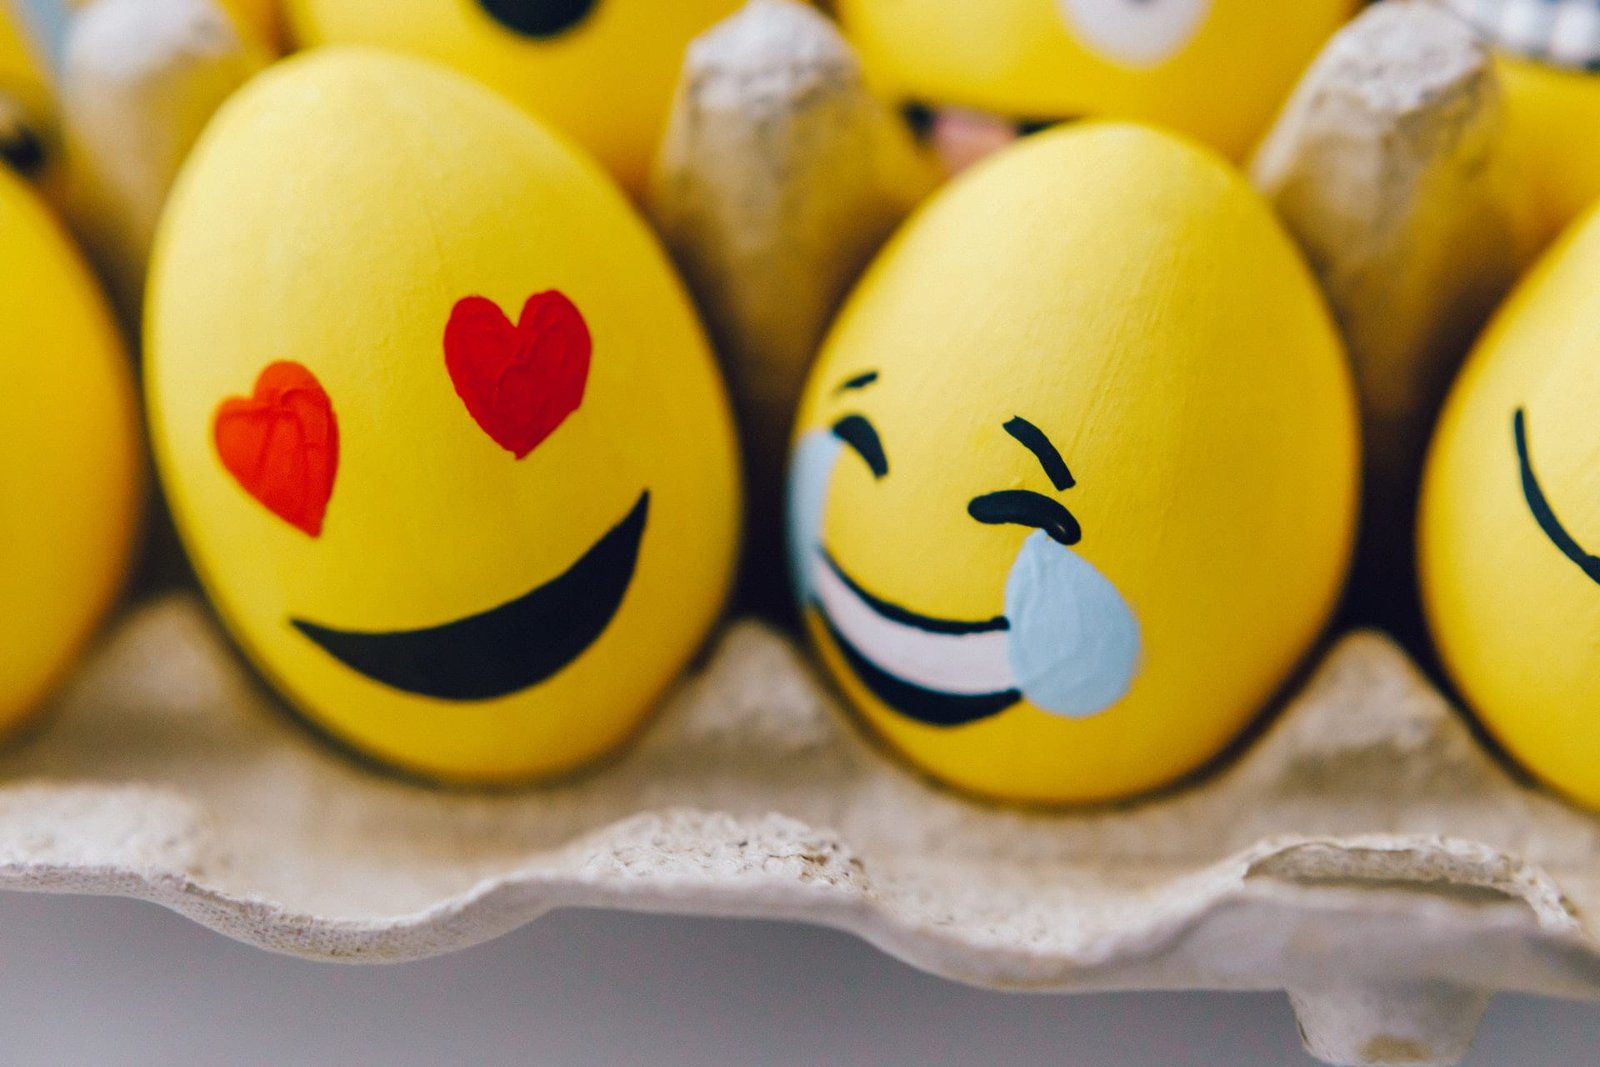 emoji eggs